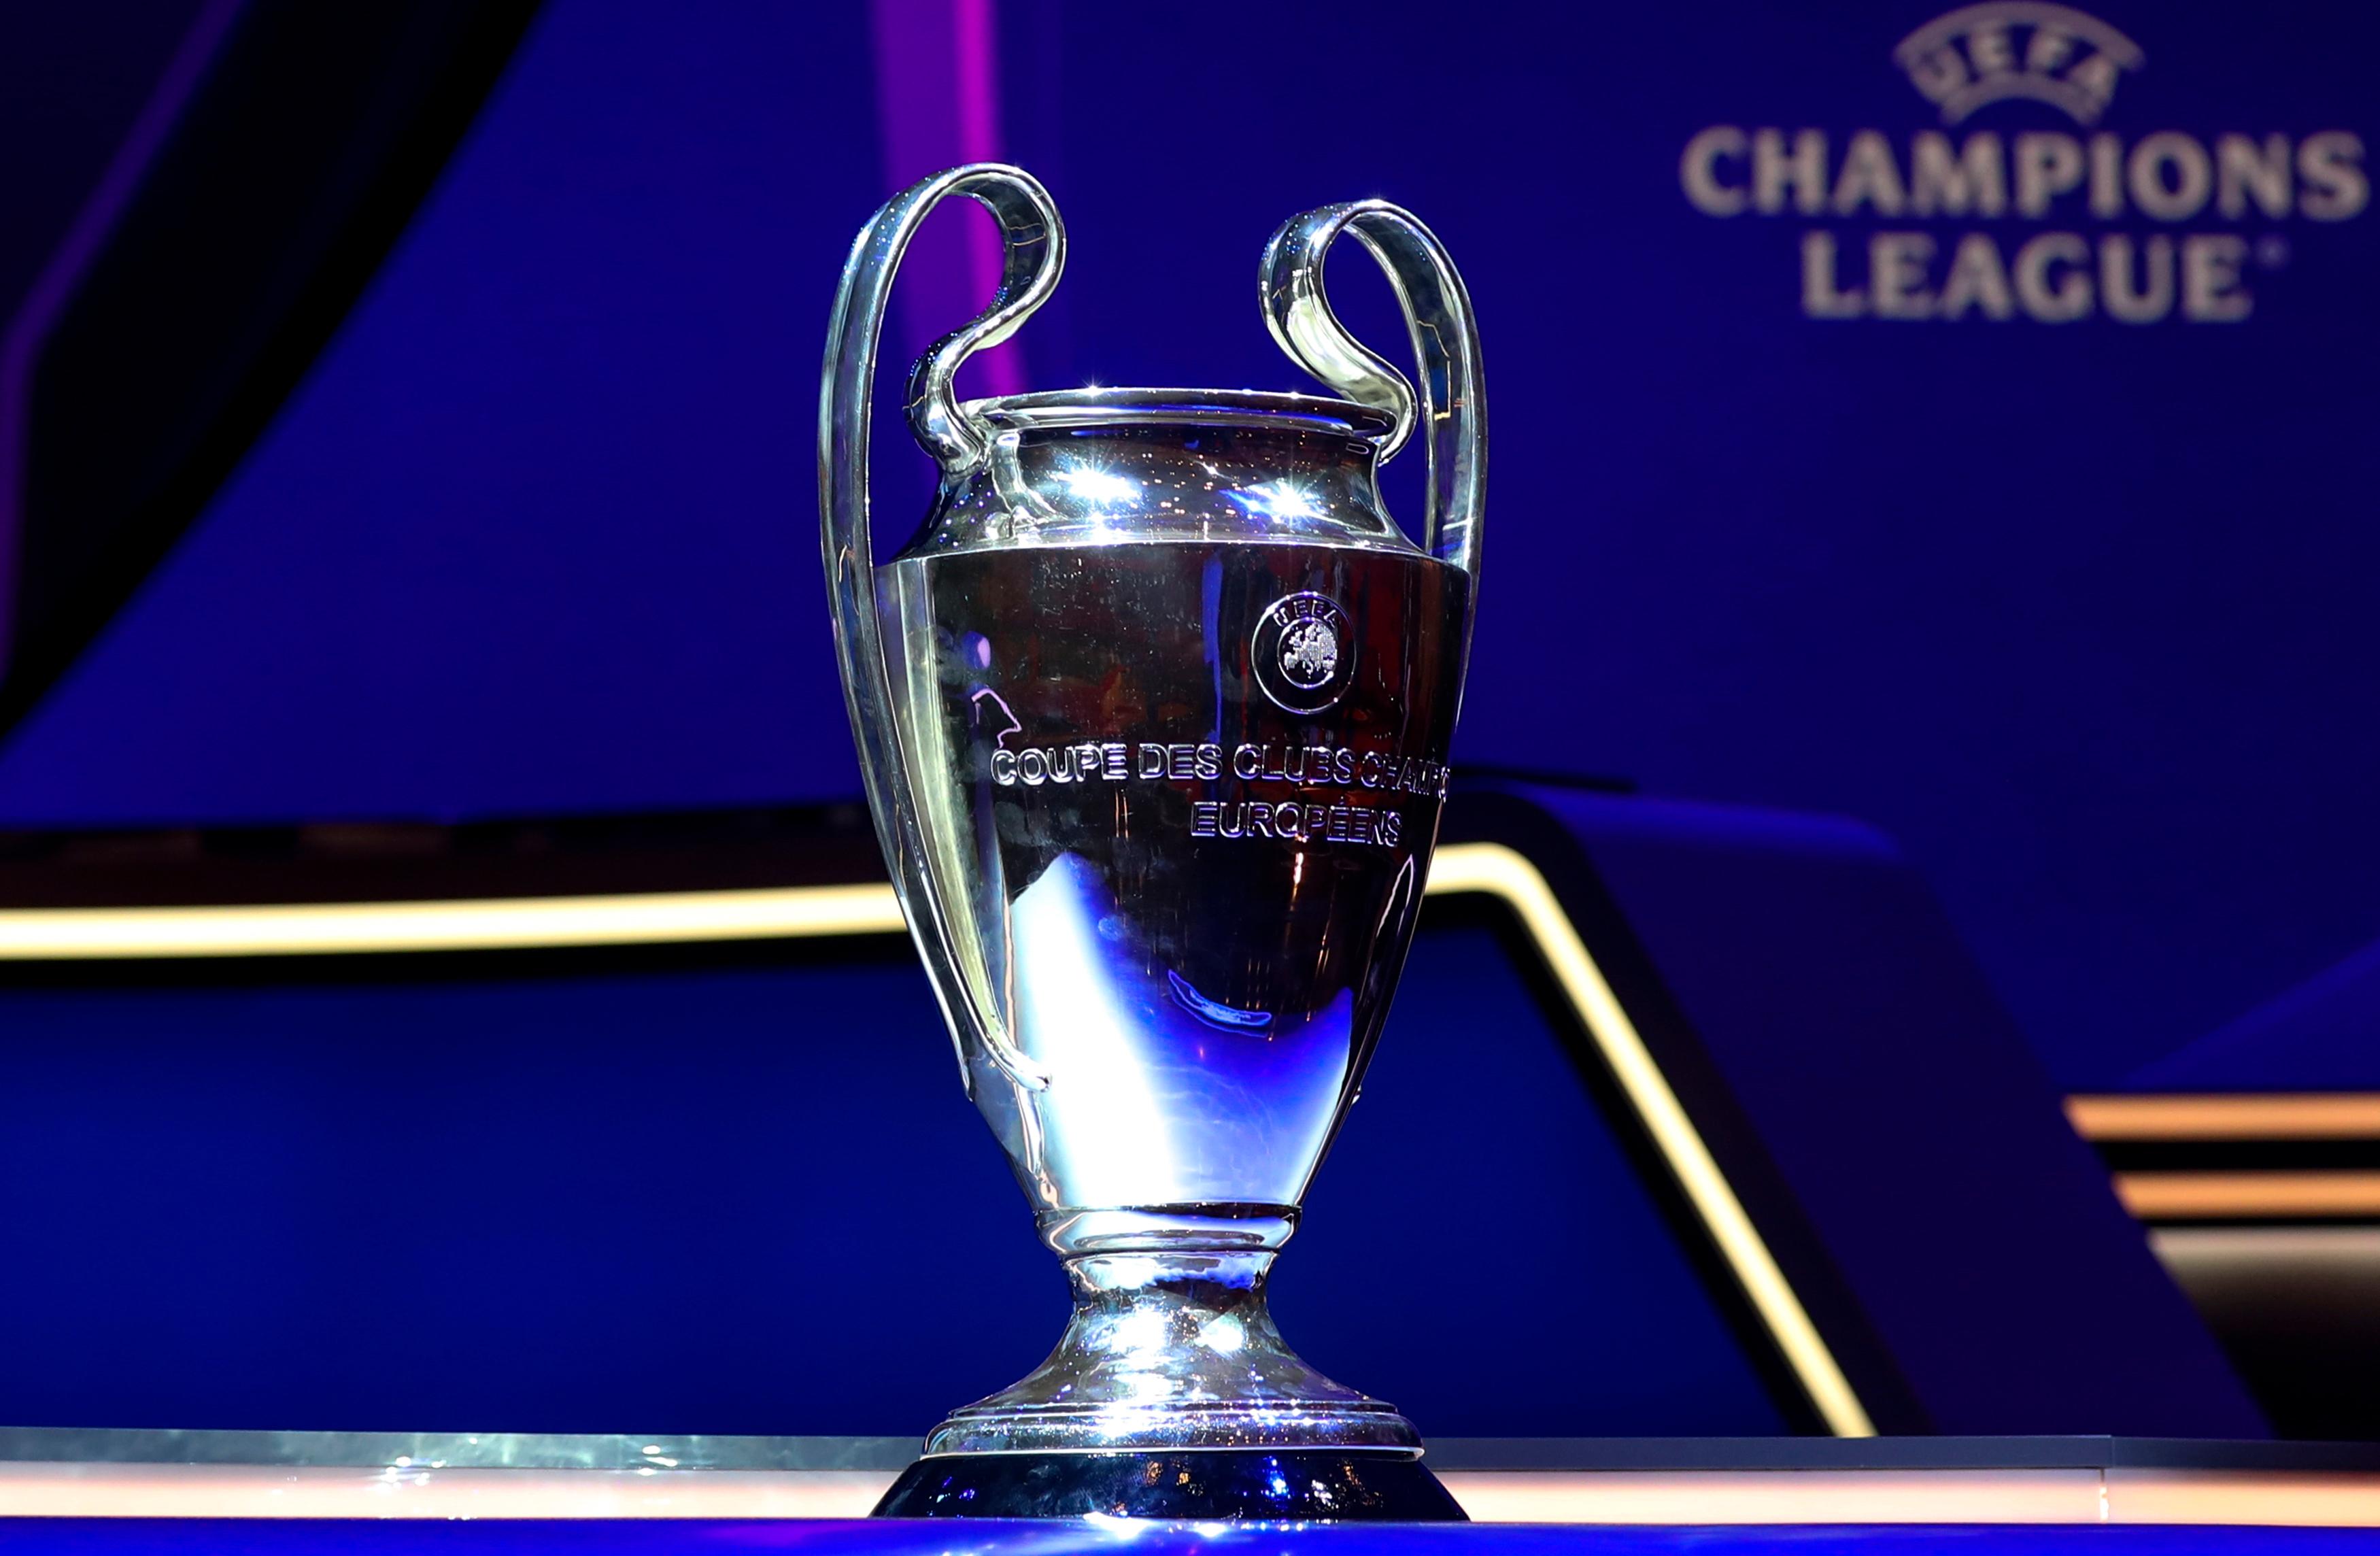 Onde assistir aos jogos da rodada da Champions League?